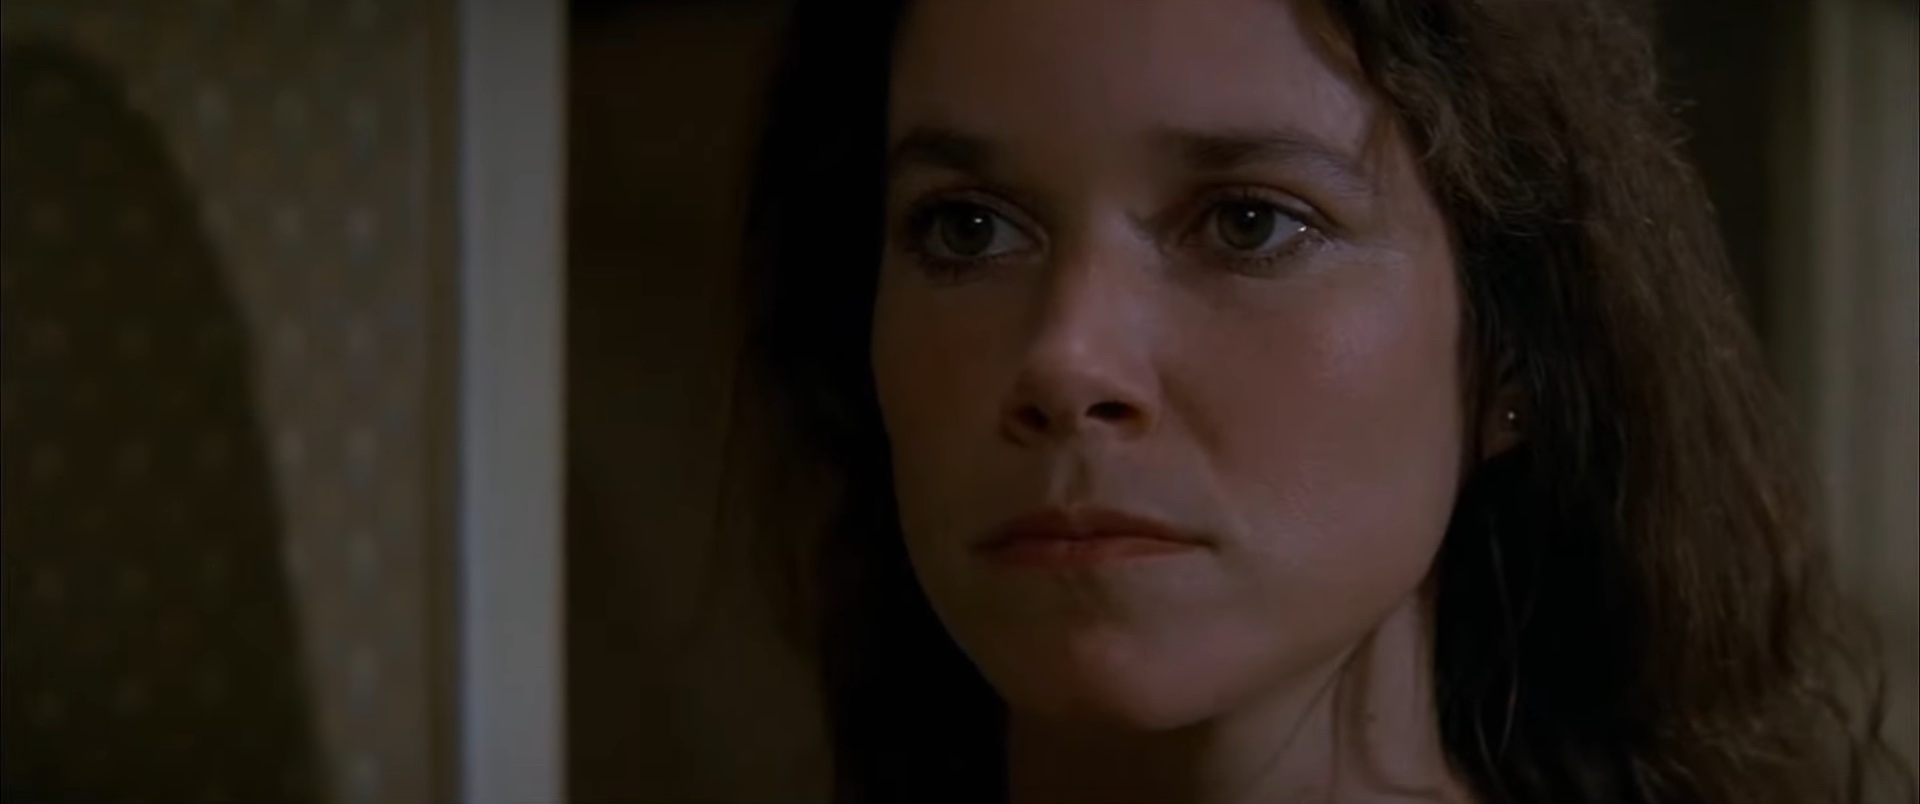 Carla Moran em "A Entidade" (1981).